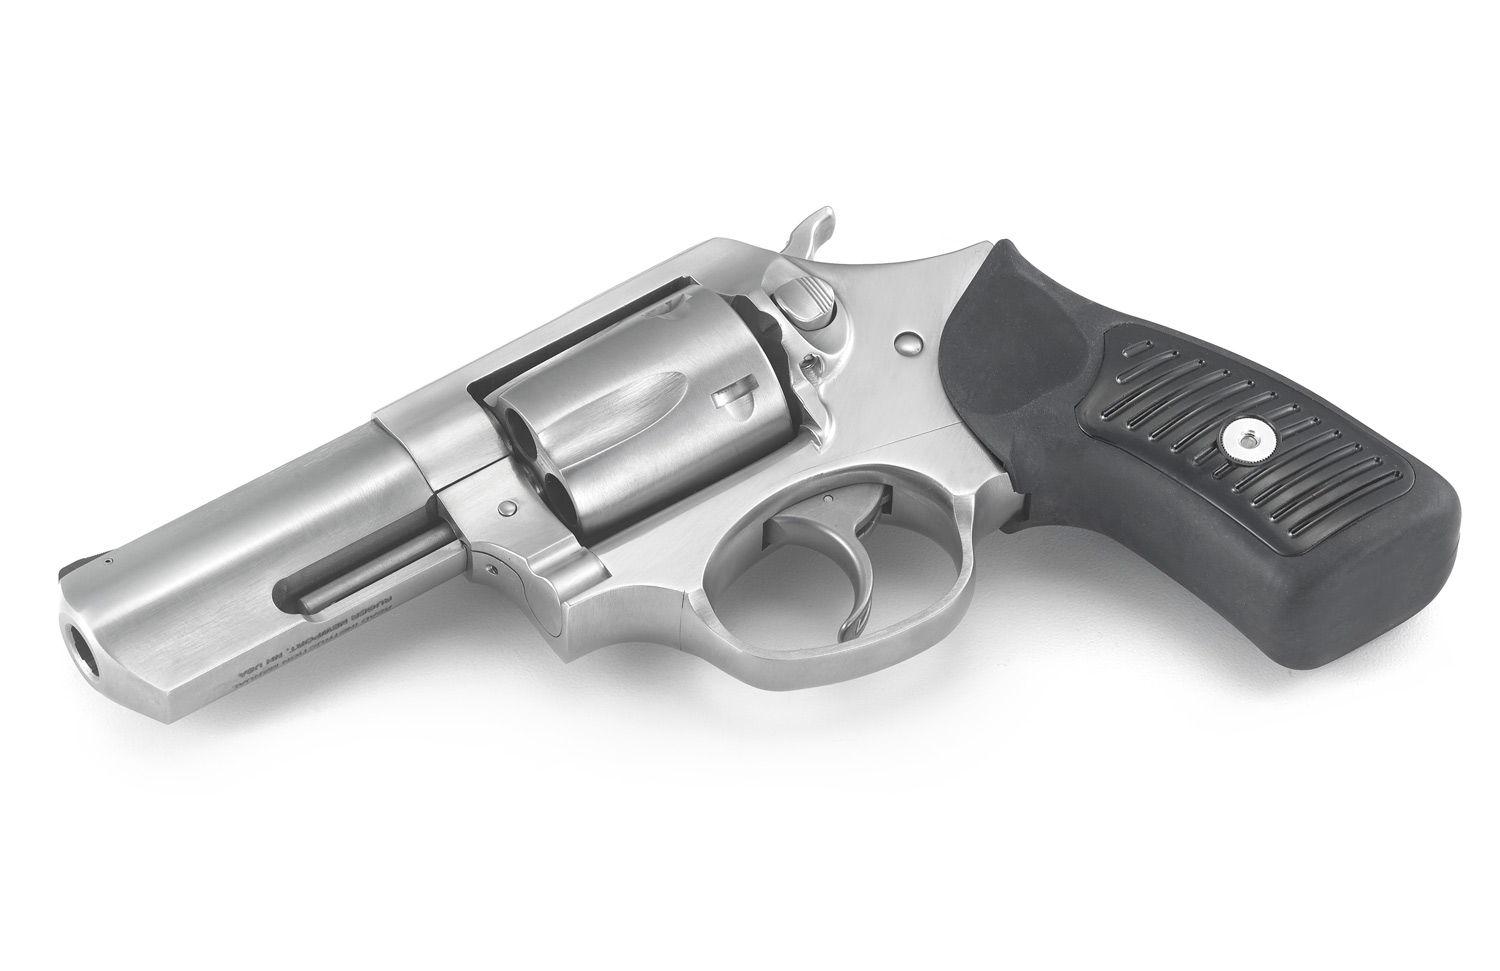 Revolver Ruger SP101 KSP 331x (3